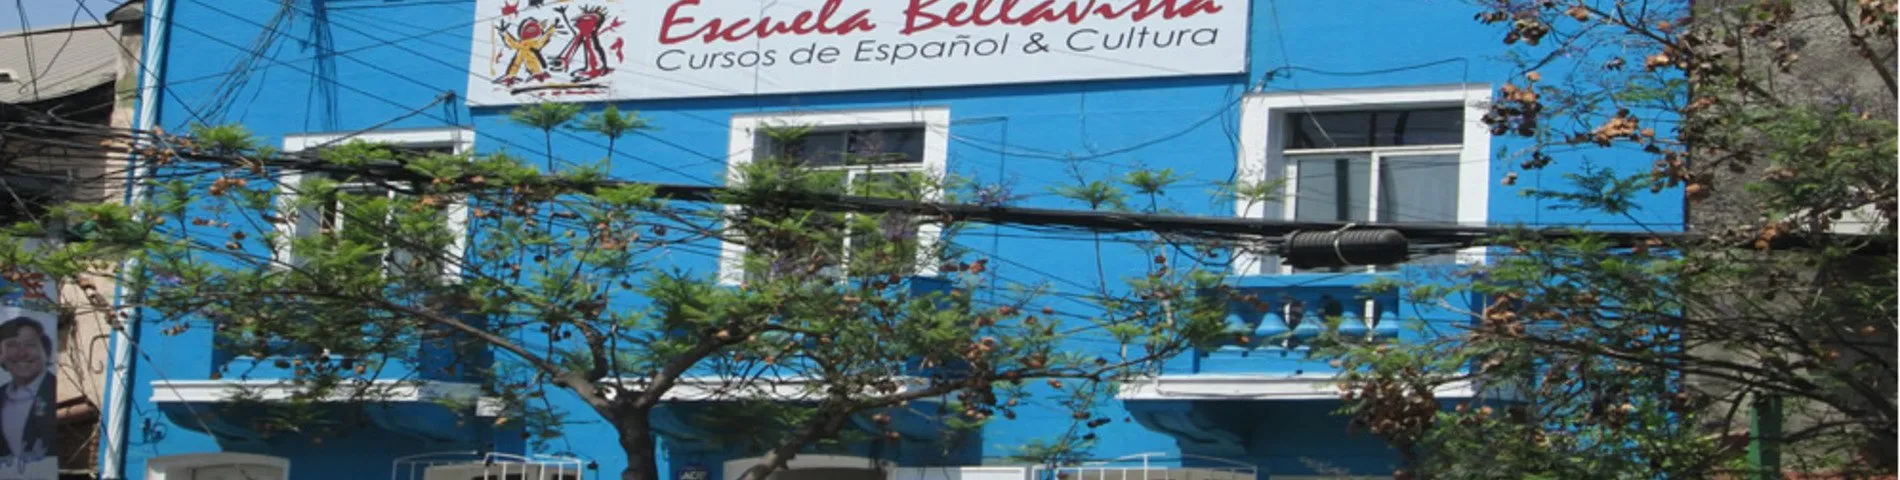 Imatge 1 de l'escola Escuela Bellavista